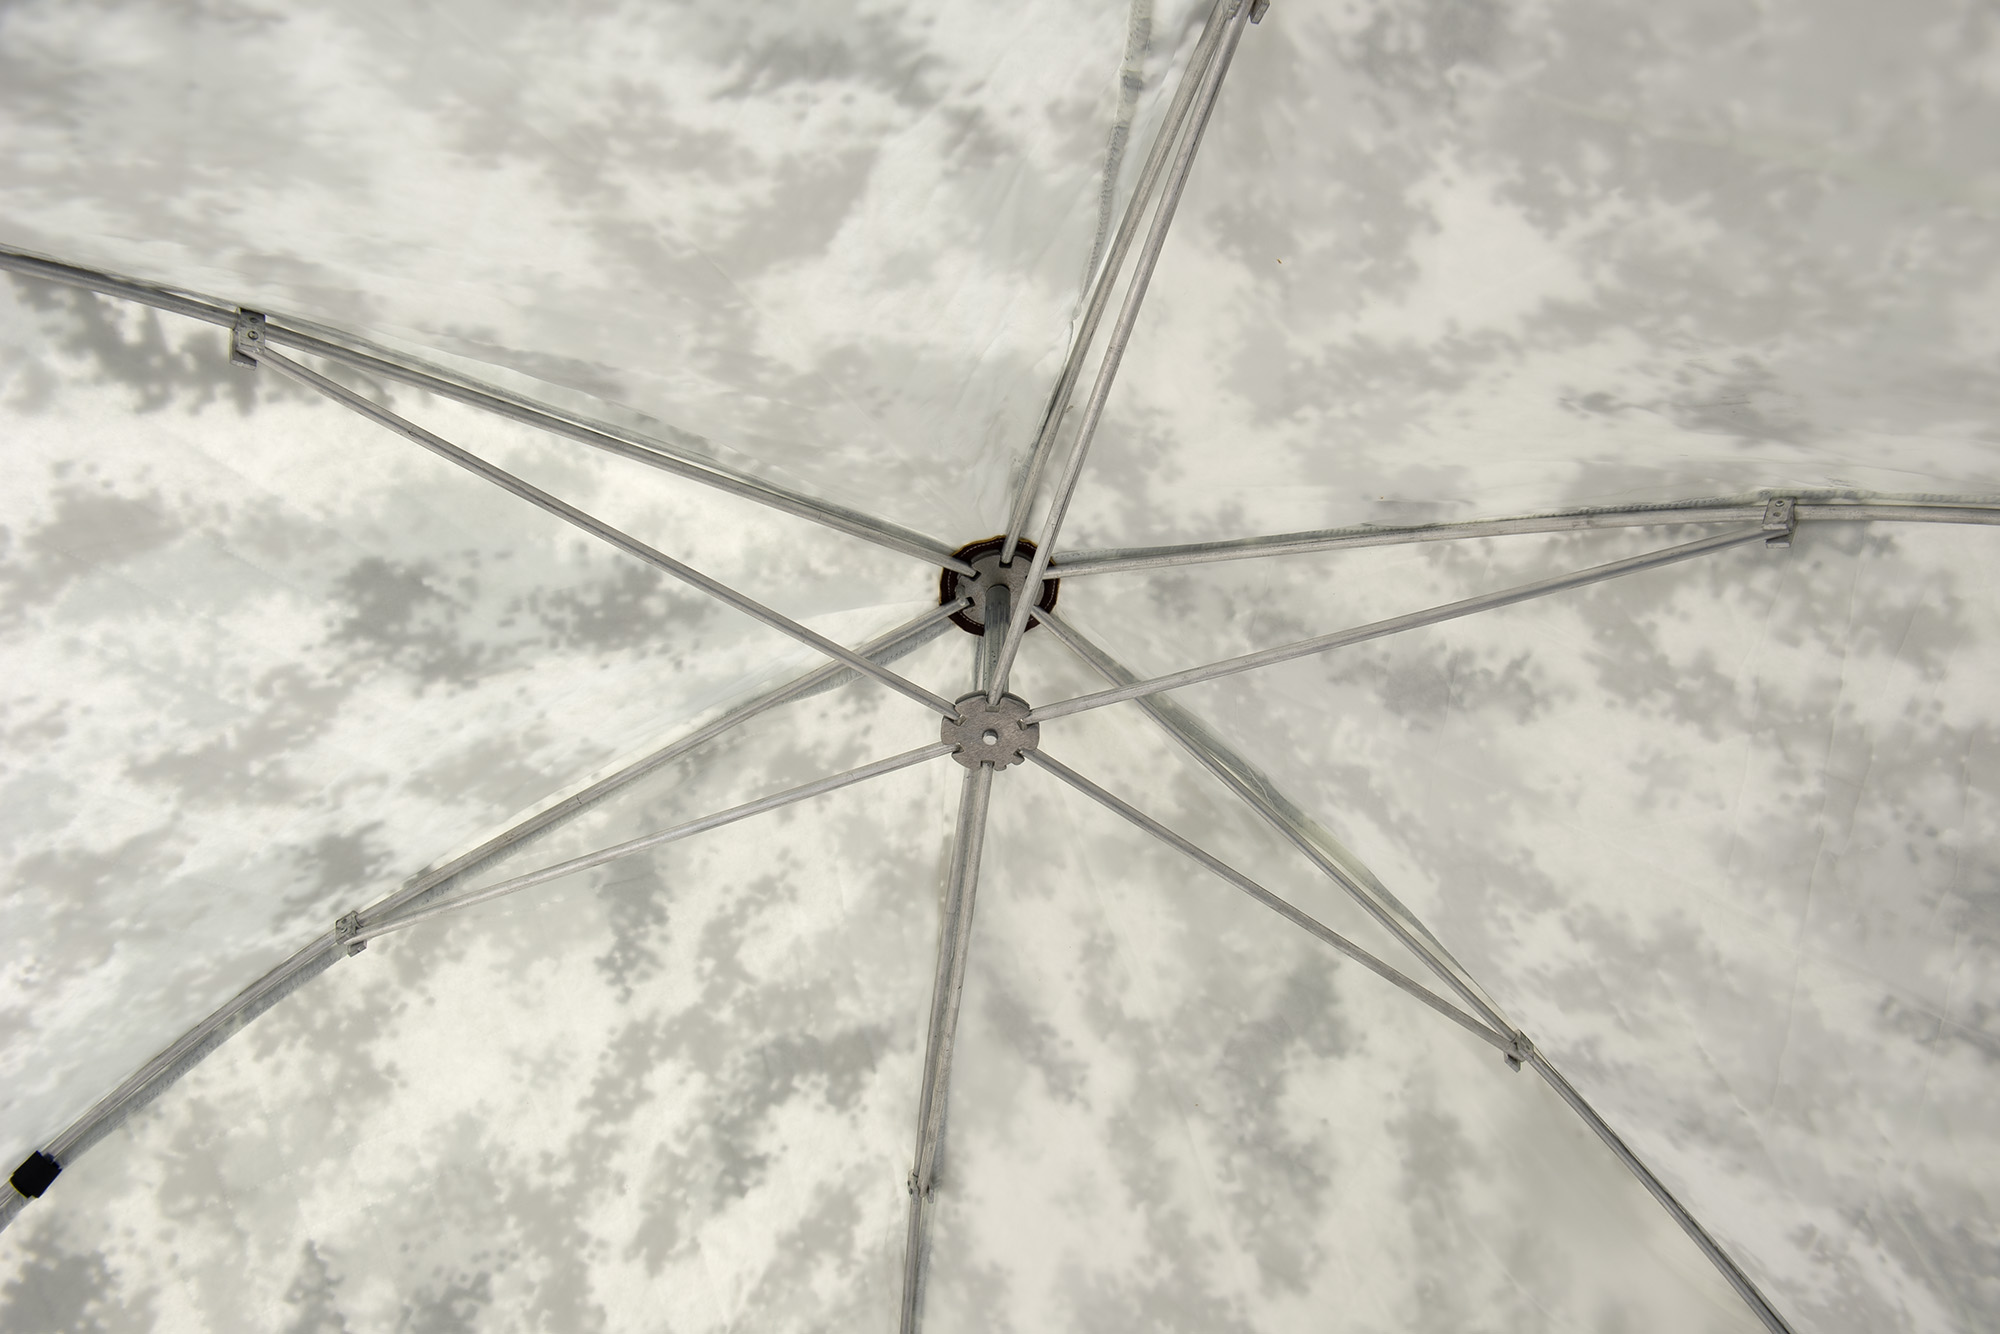 Палатка зонт "CONDOR" зимняя утеплённая 2,0 х 2,0 х 1,6 белый КМФ цифра